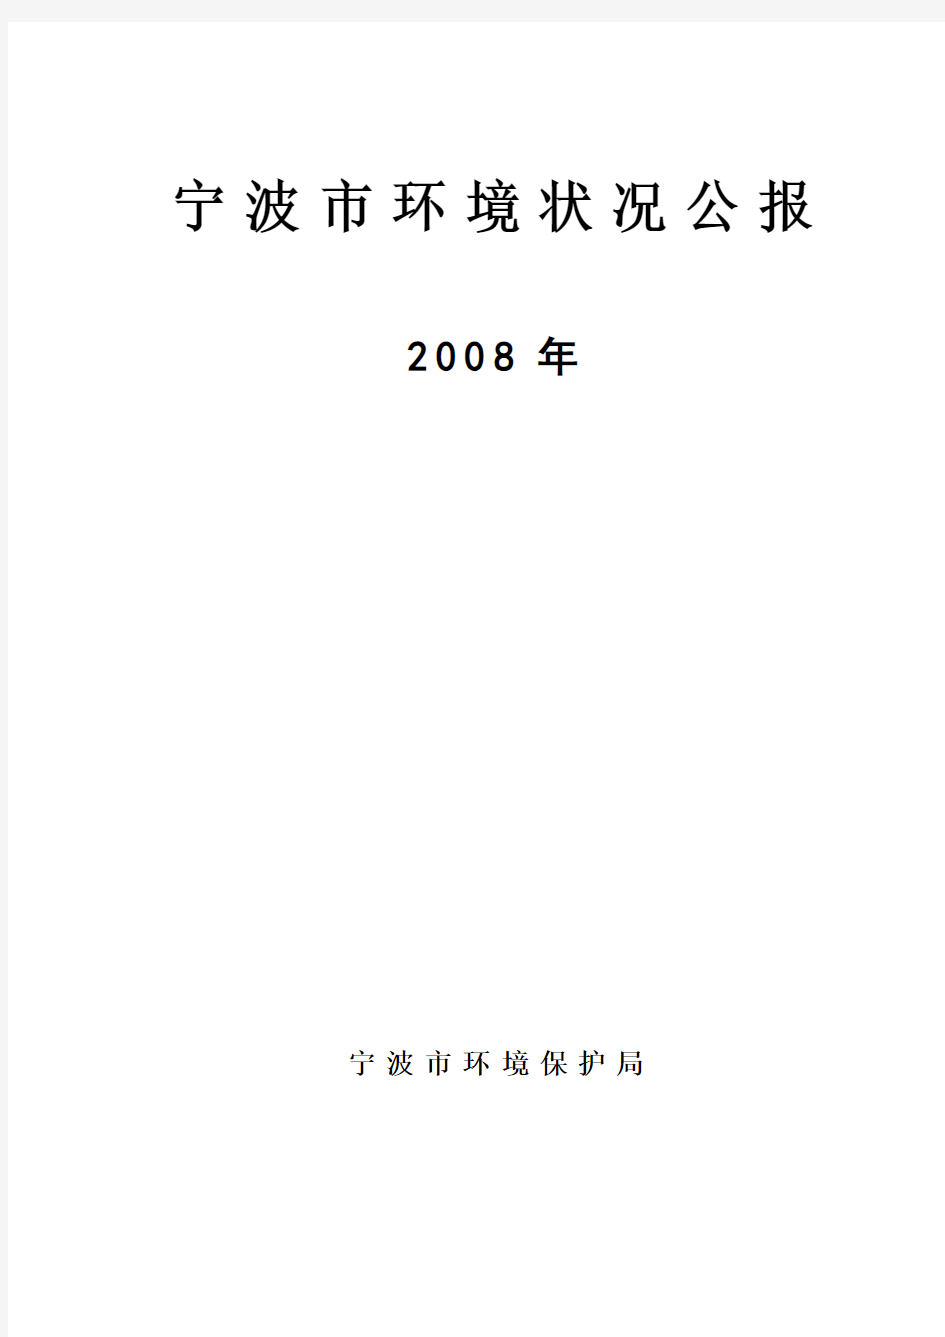 2008年宁波市环境状况公报